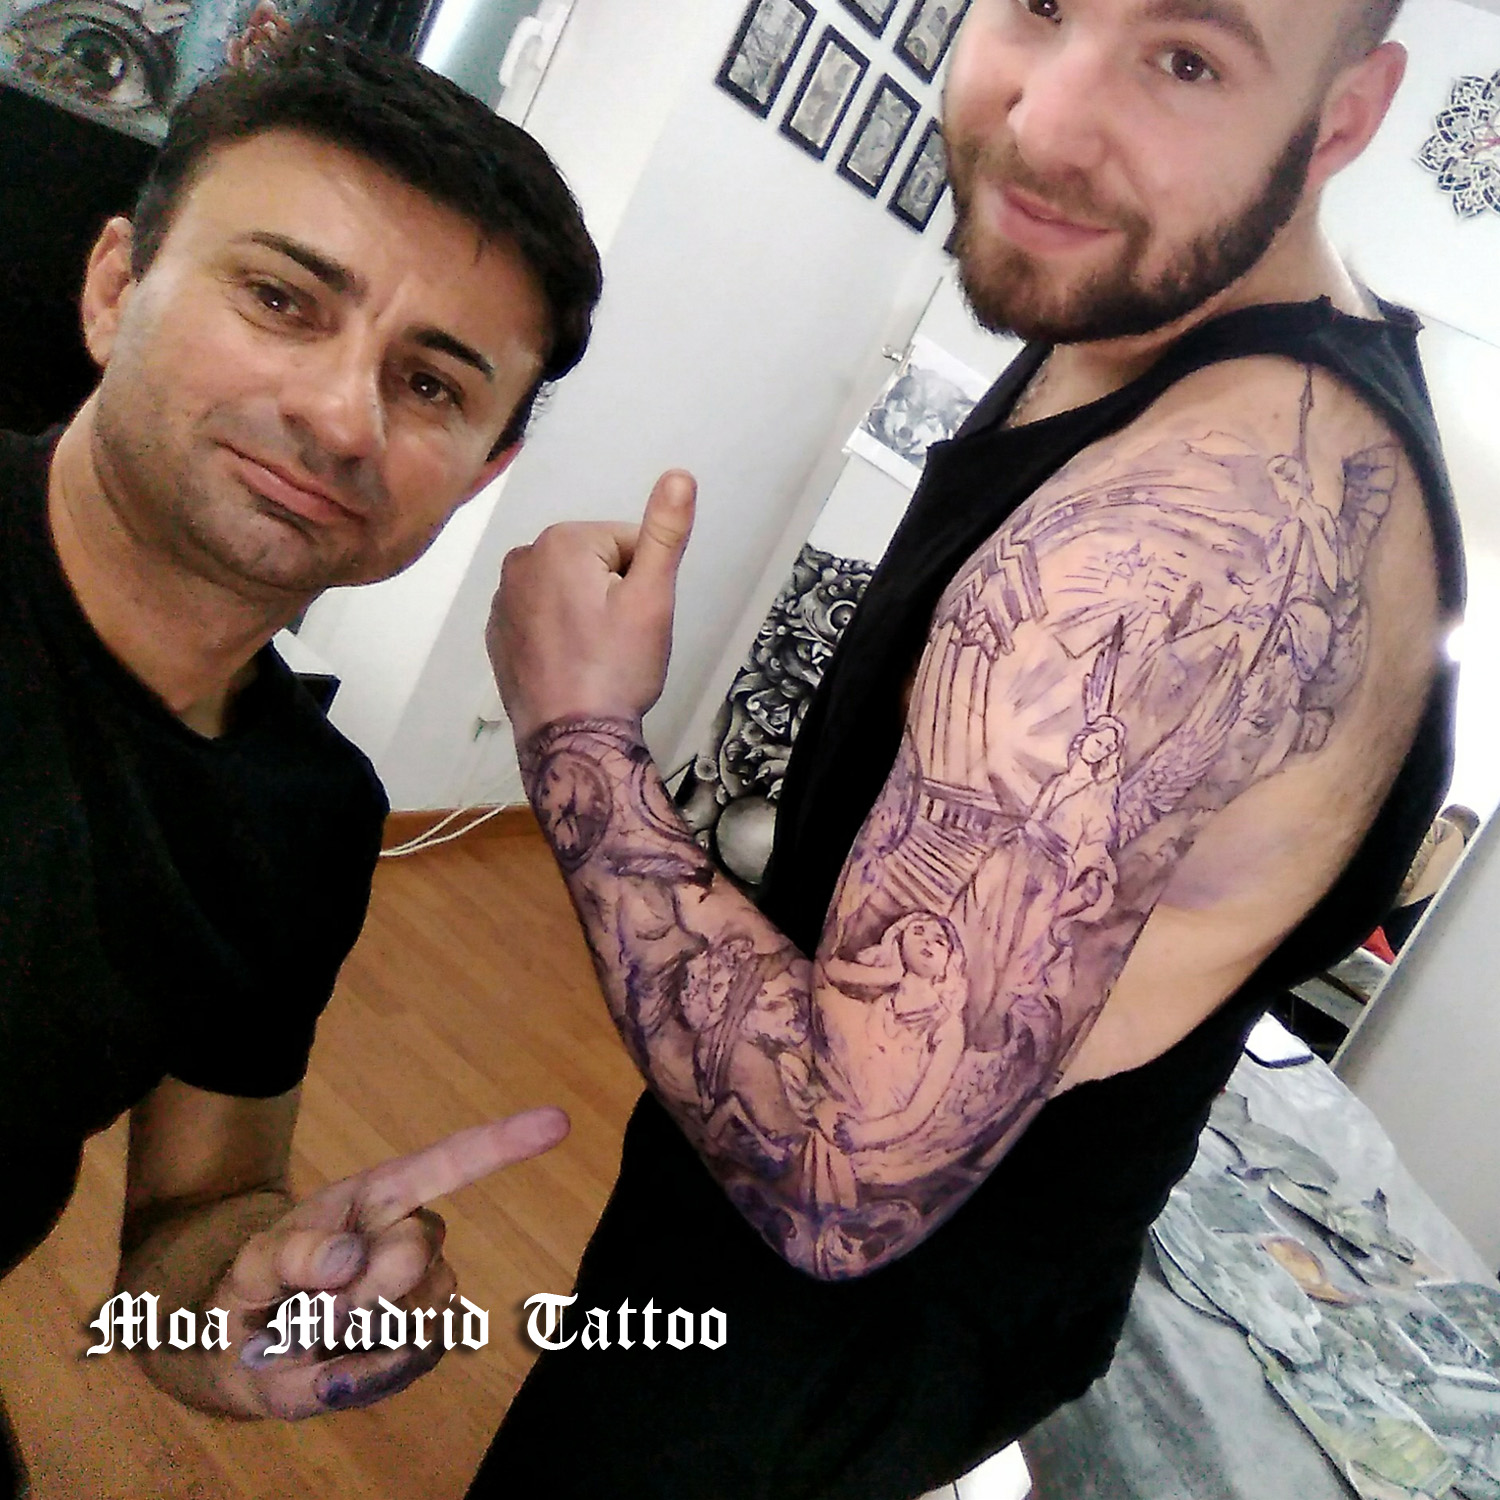 Diseñador de grandes tattoos en Madrid